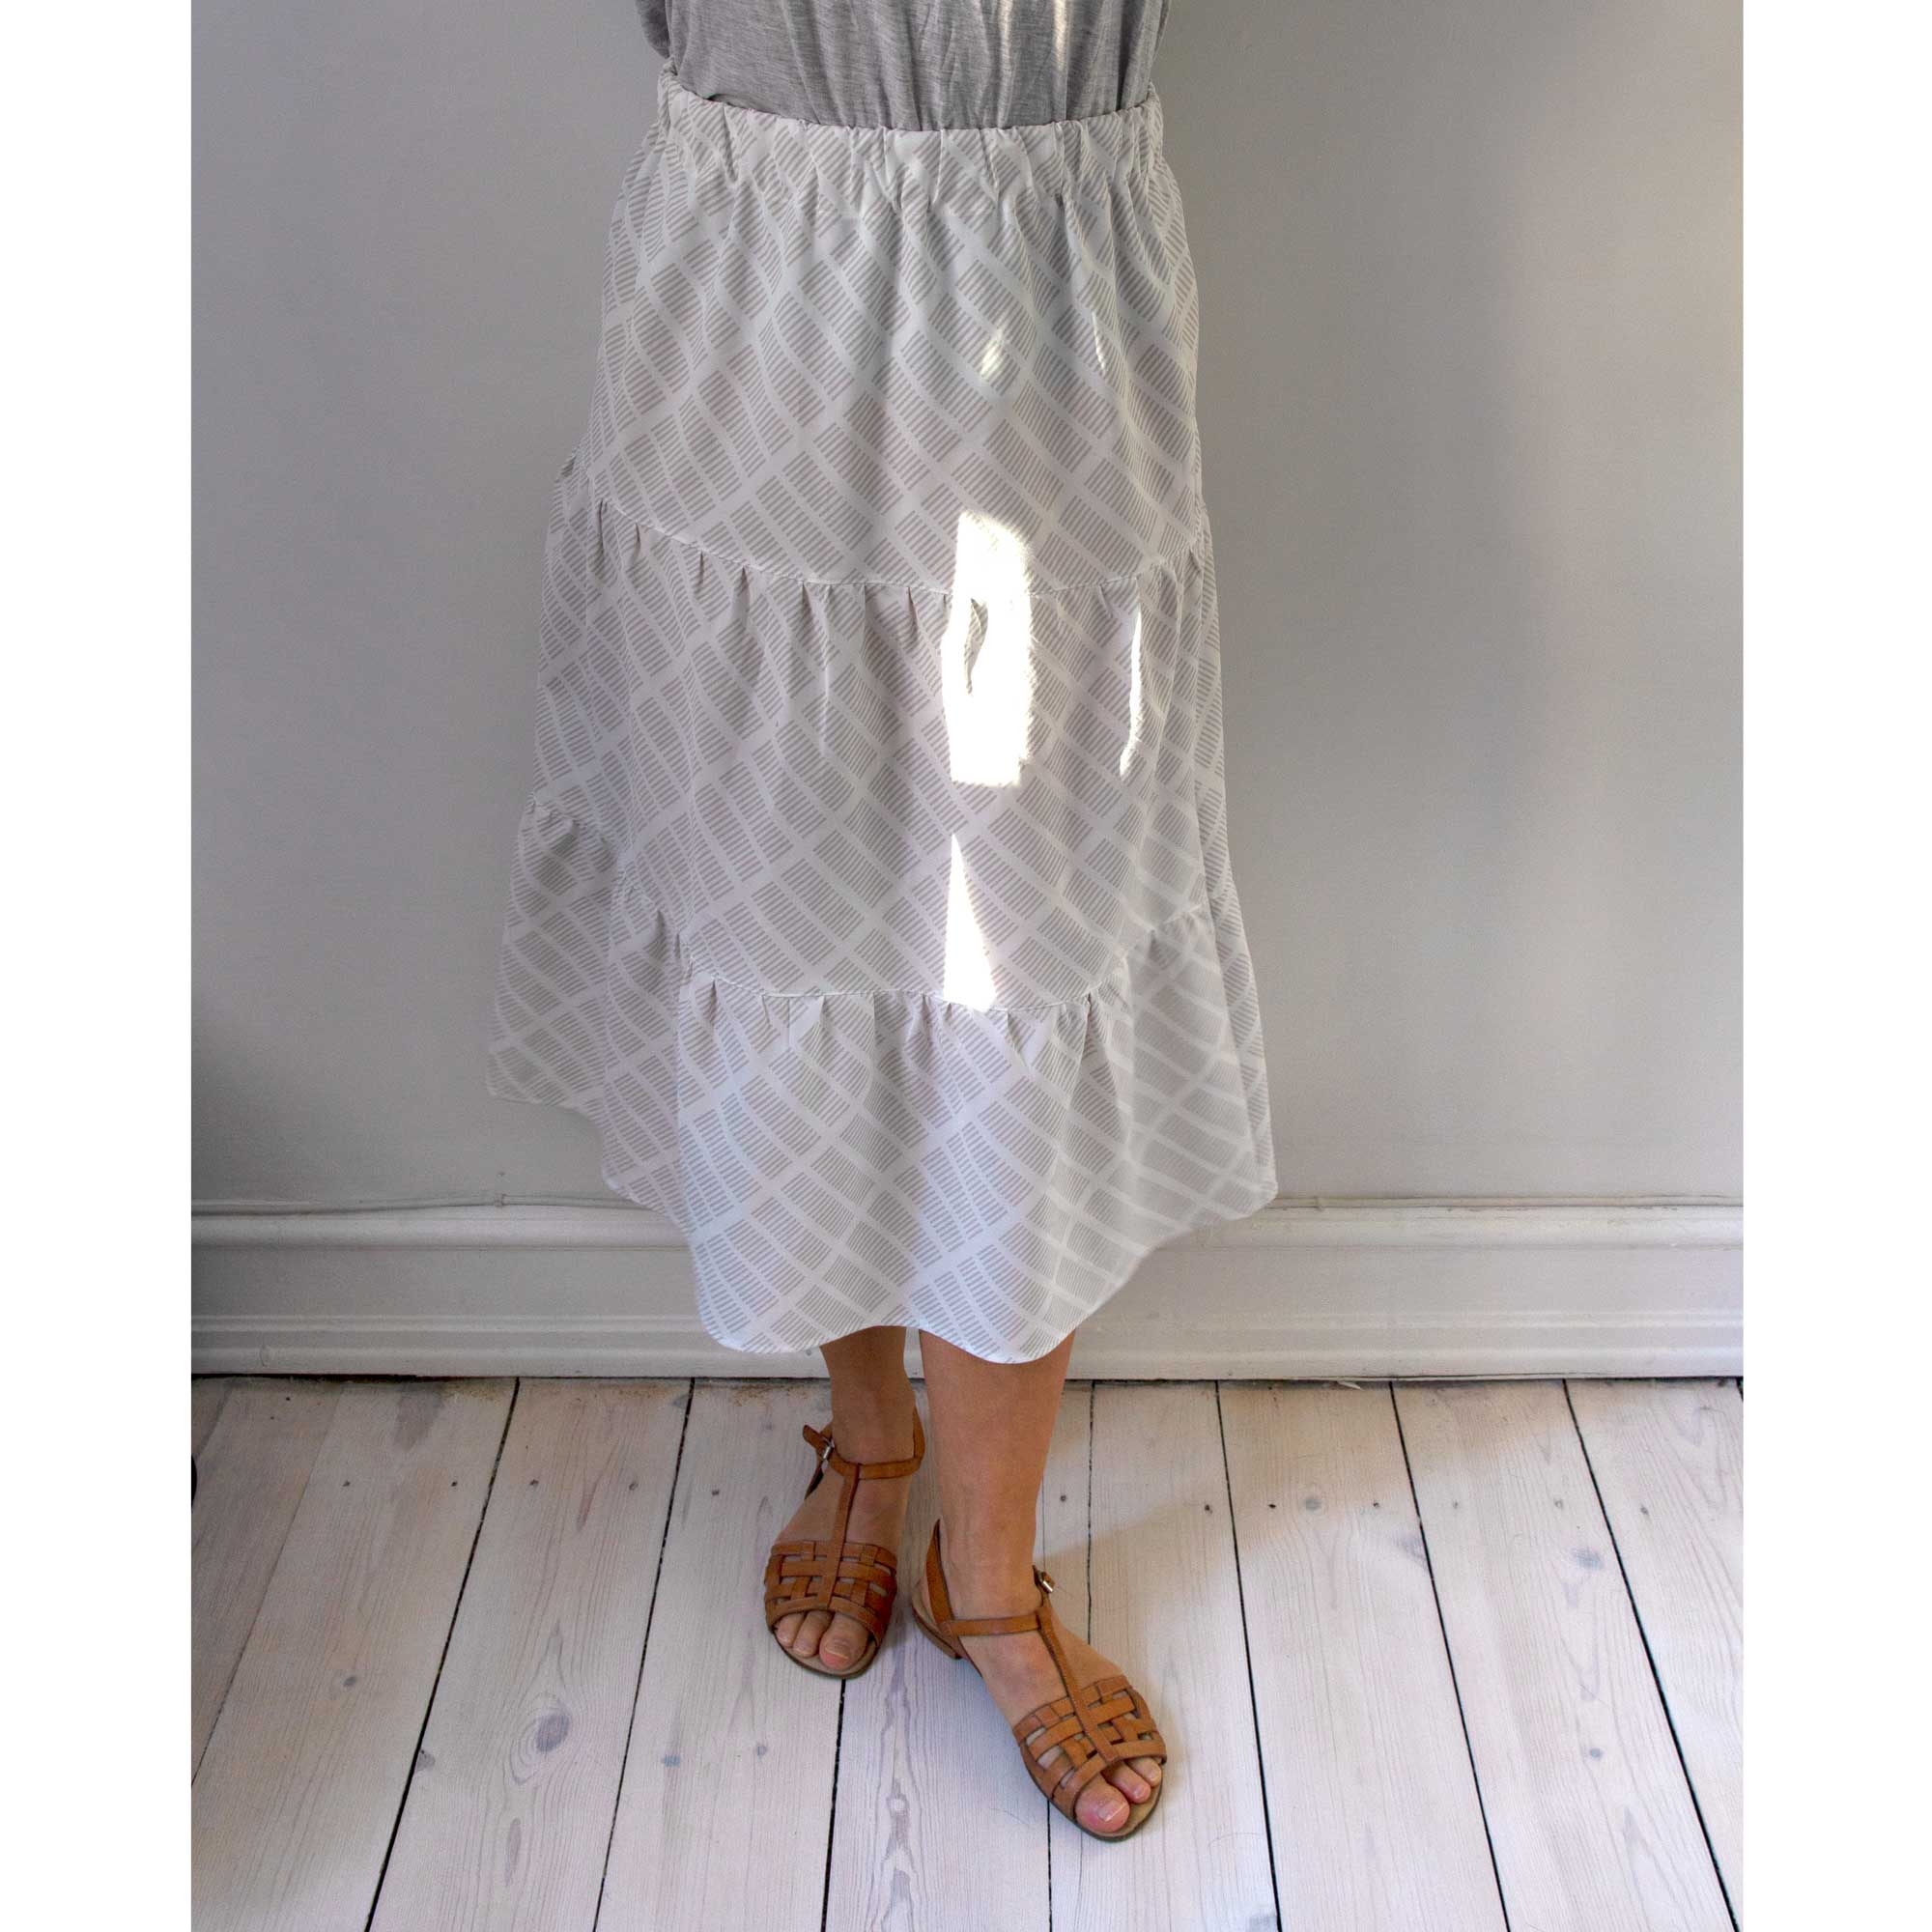 Sonya nederdel, Tile grå, design Anne Rosenberg, RosenbergCph